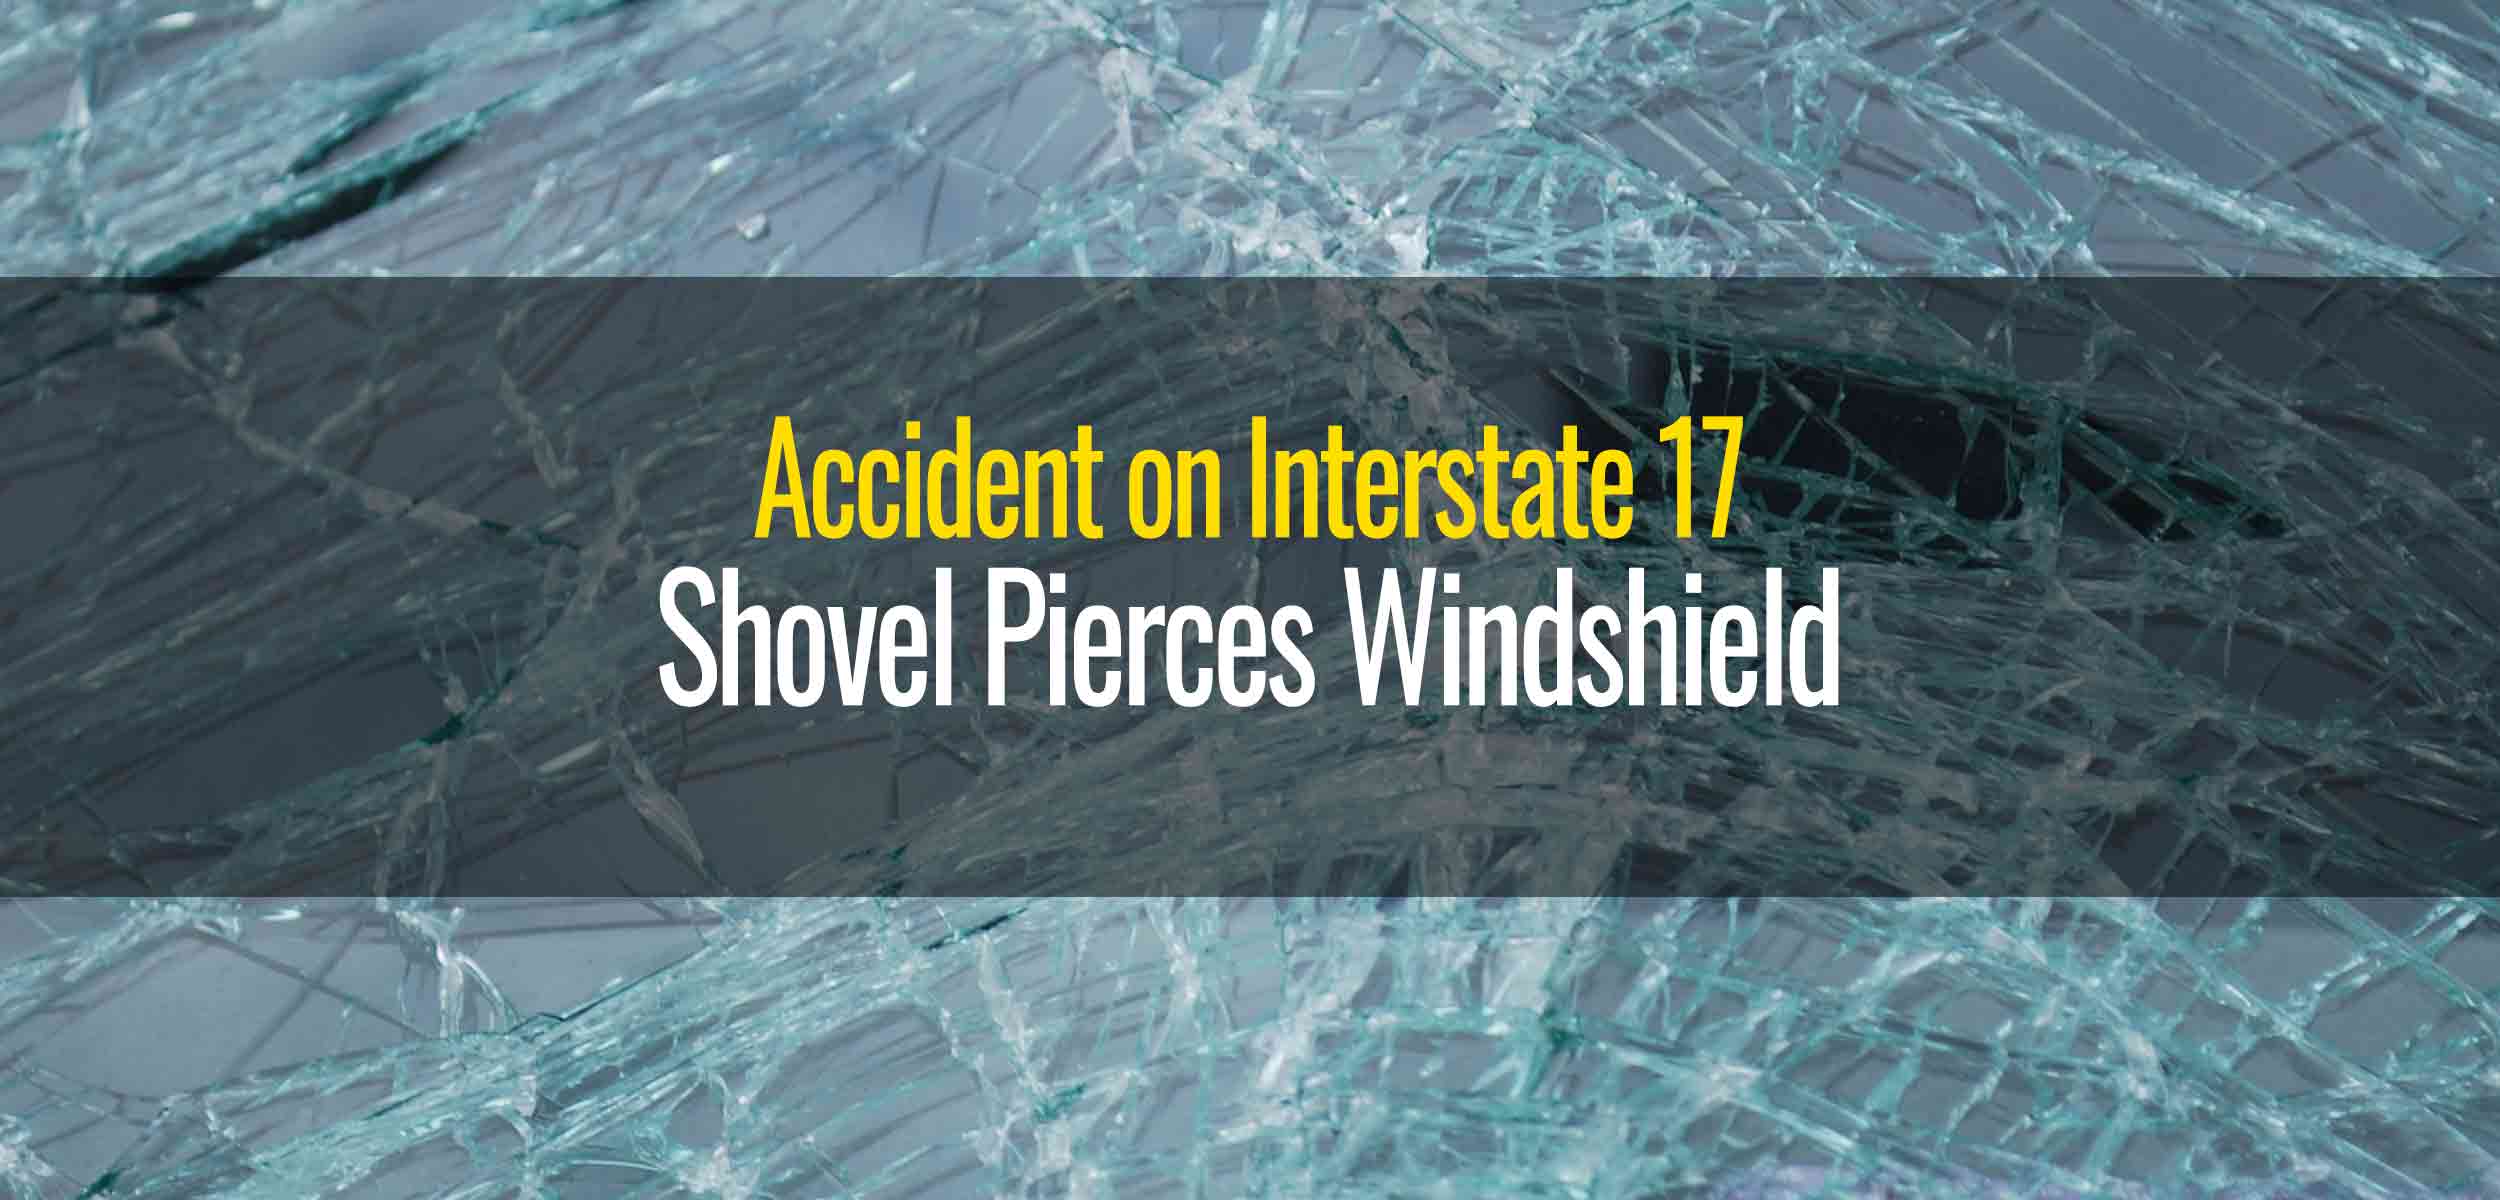 Shovel Pierces Through Windshield on Interstate 17